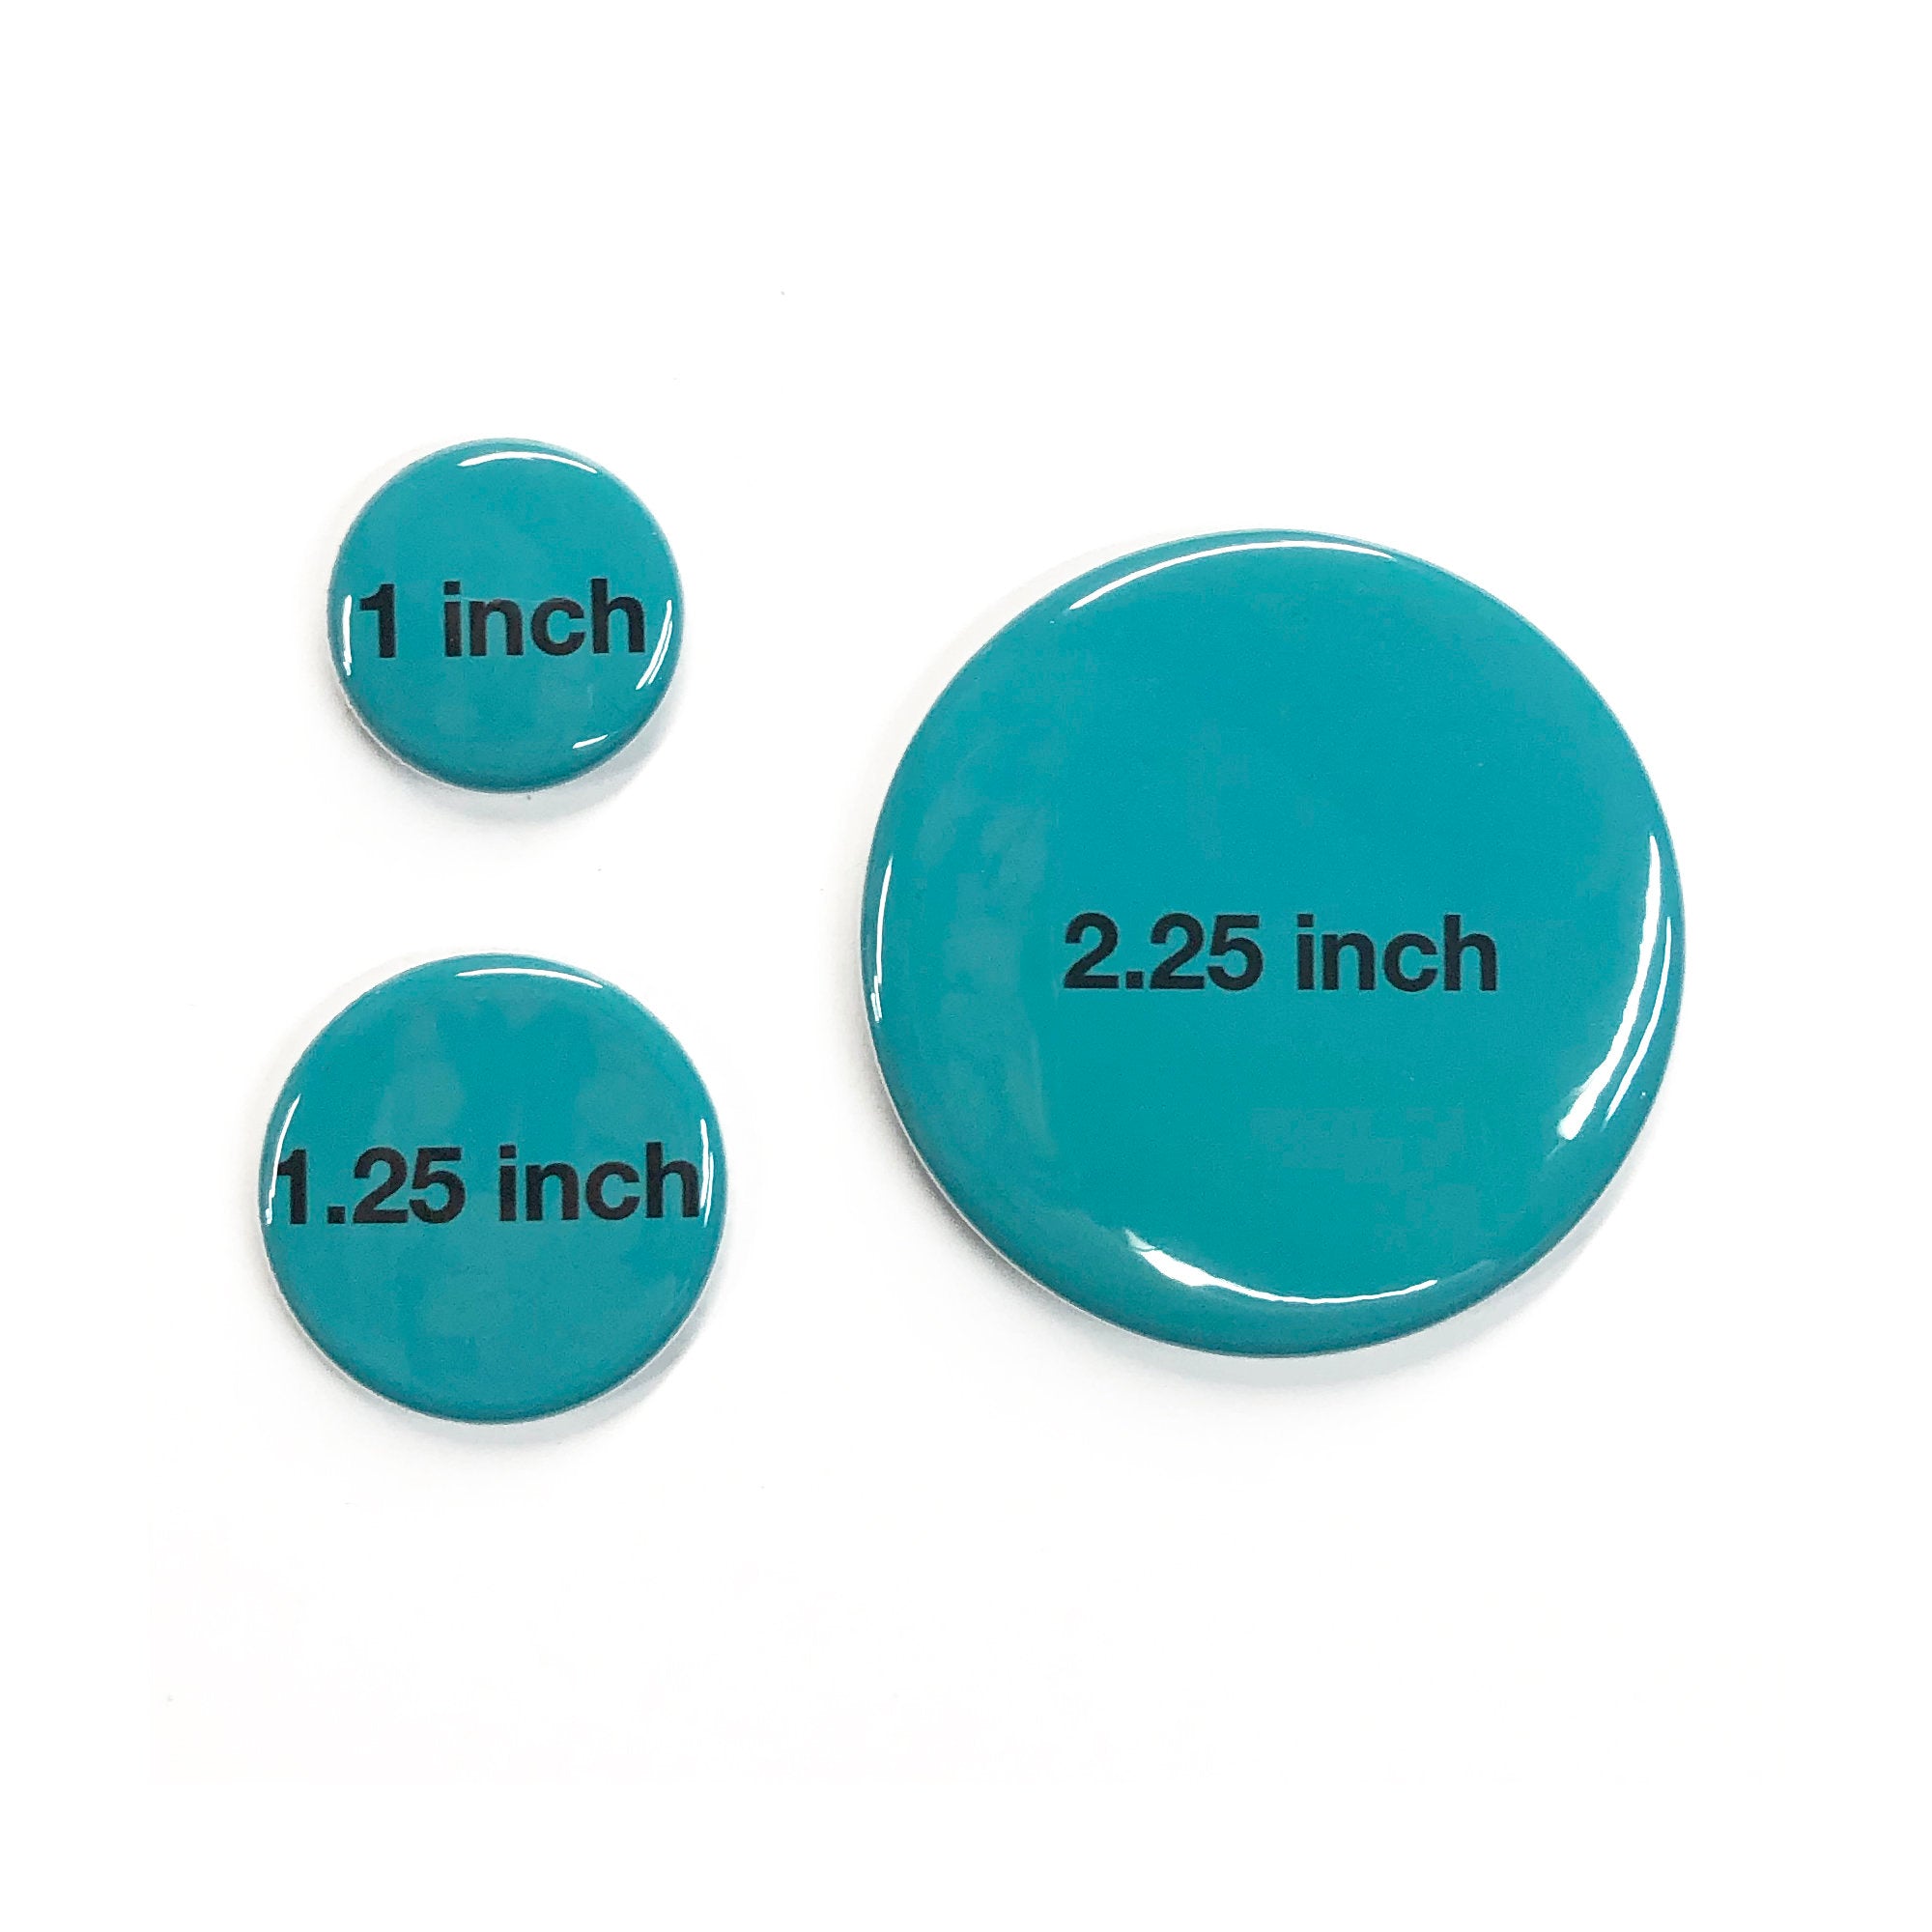 Violet Magnet, Pin Back Button, or Pocket Mirror